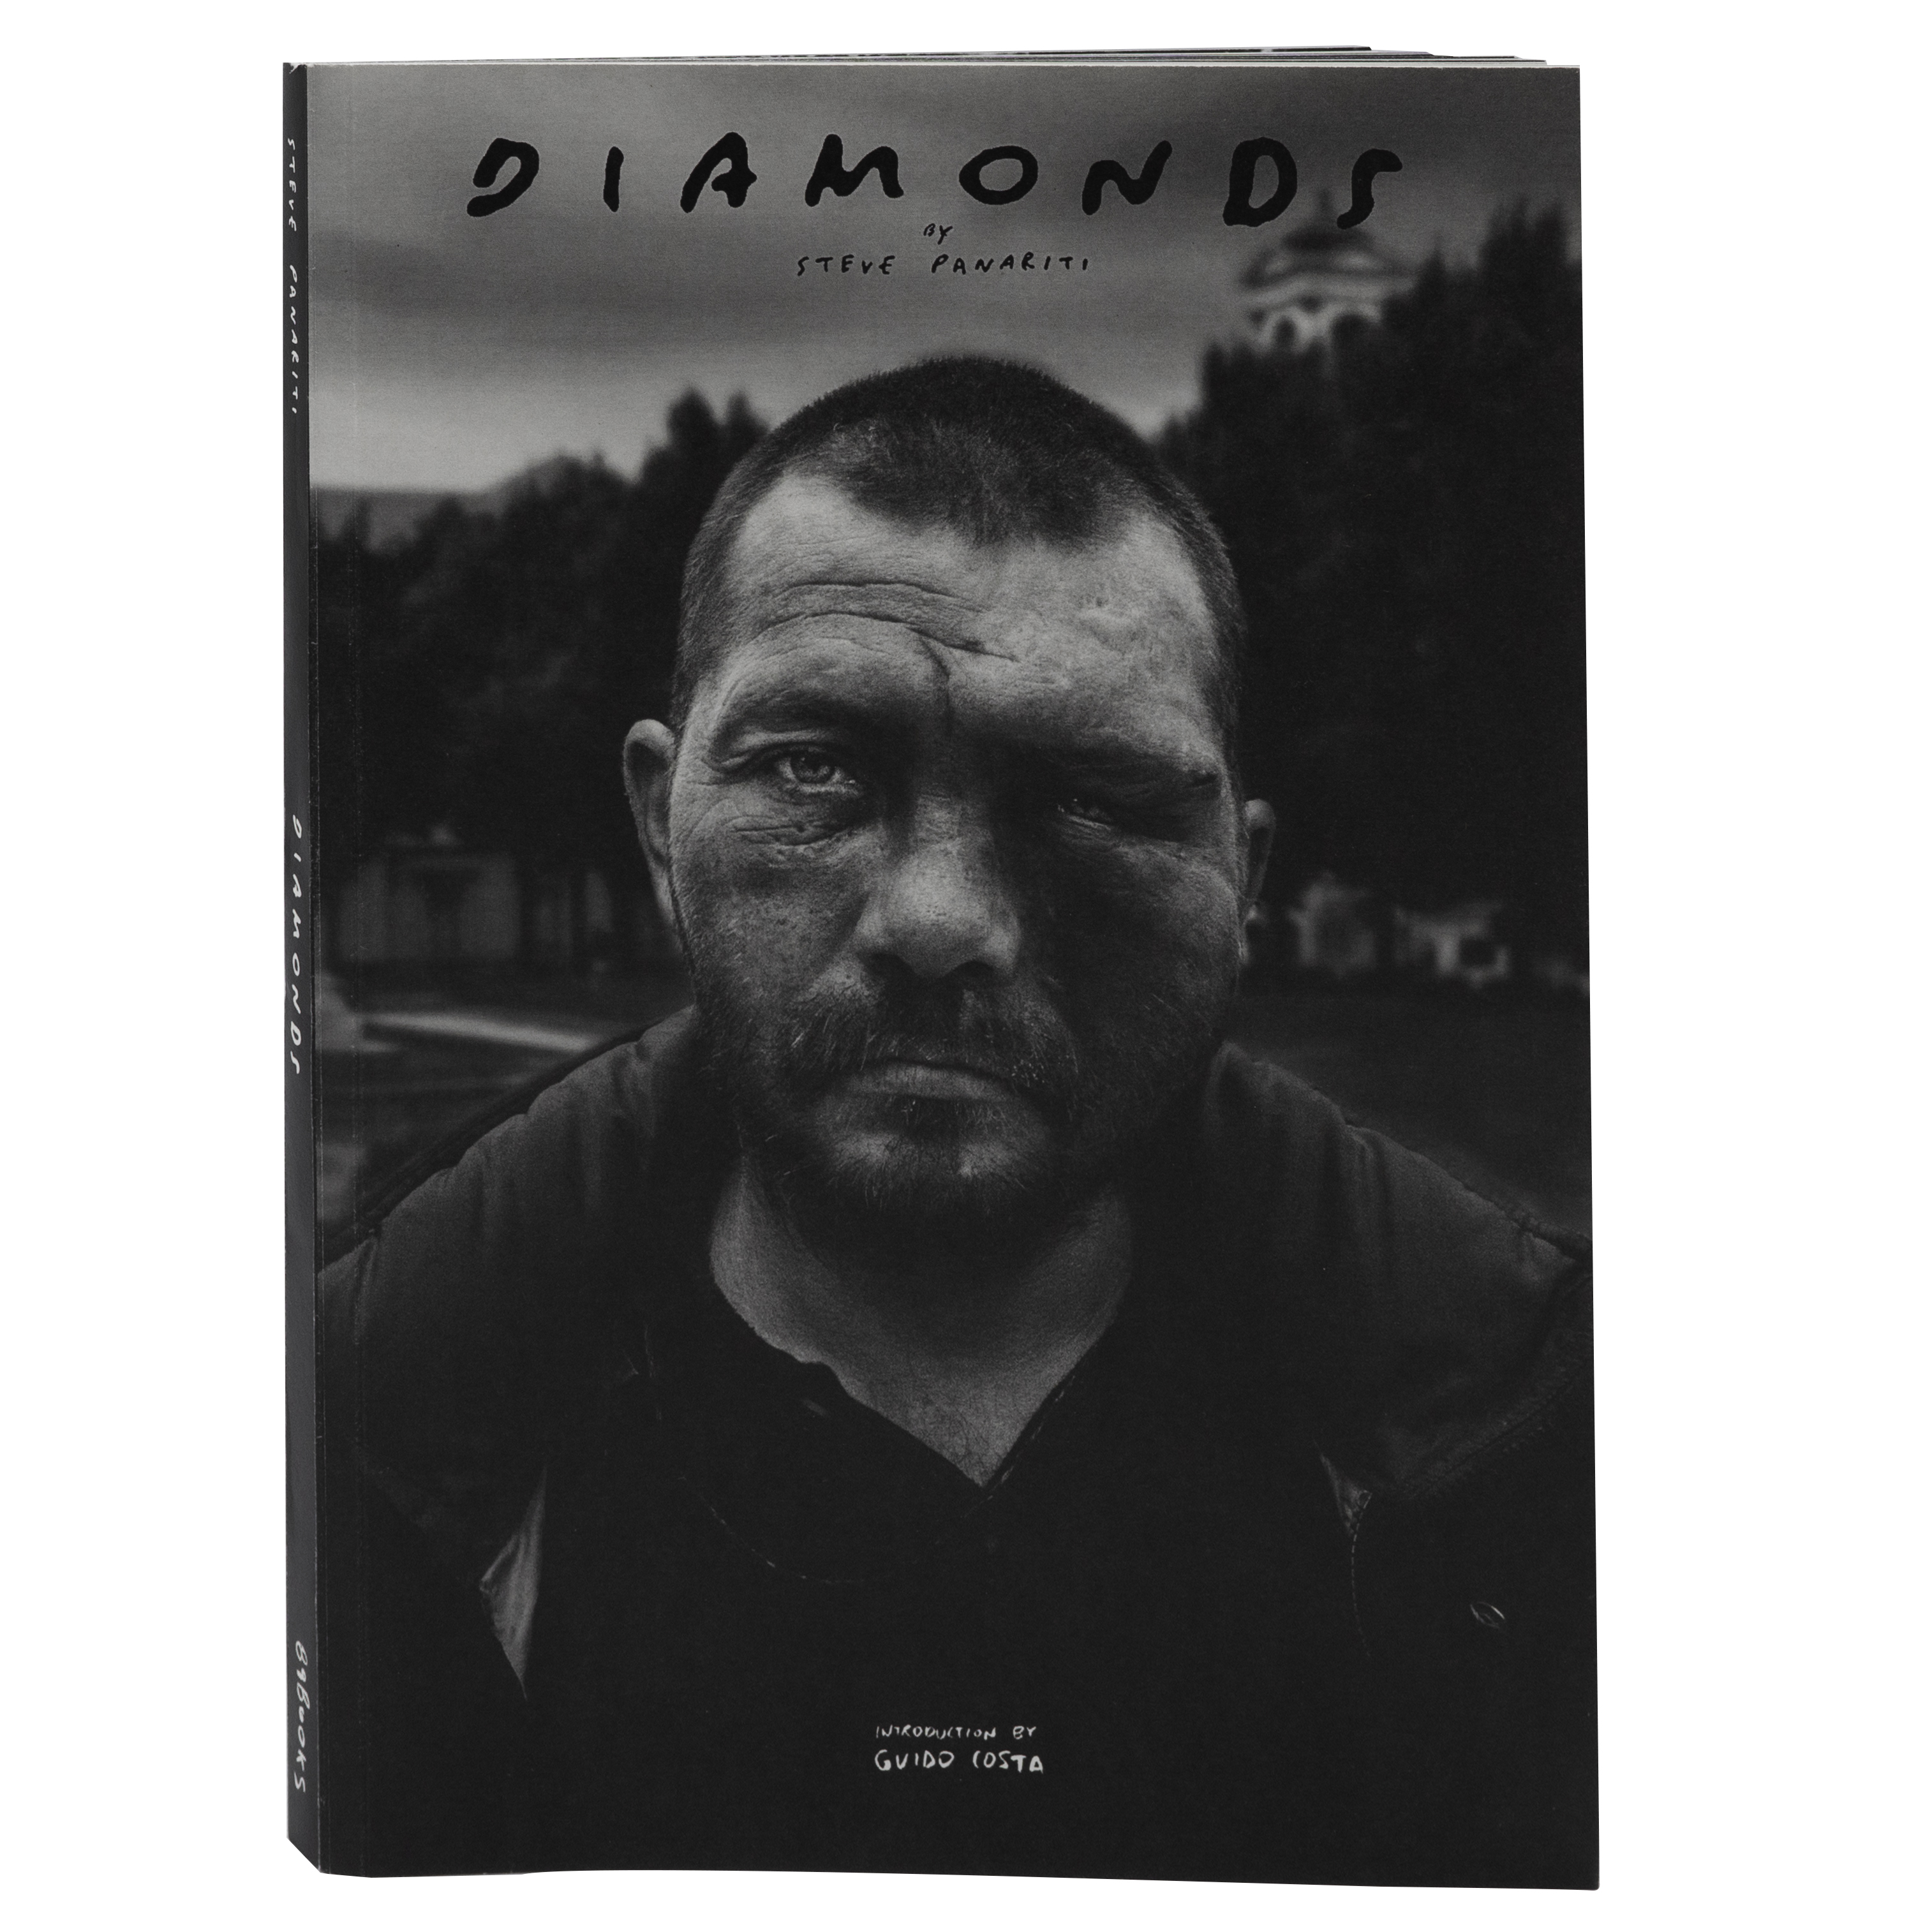 Diamonds - Steve Panariti